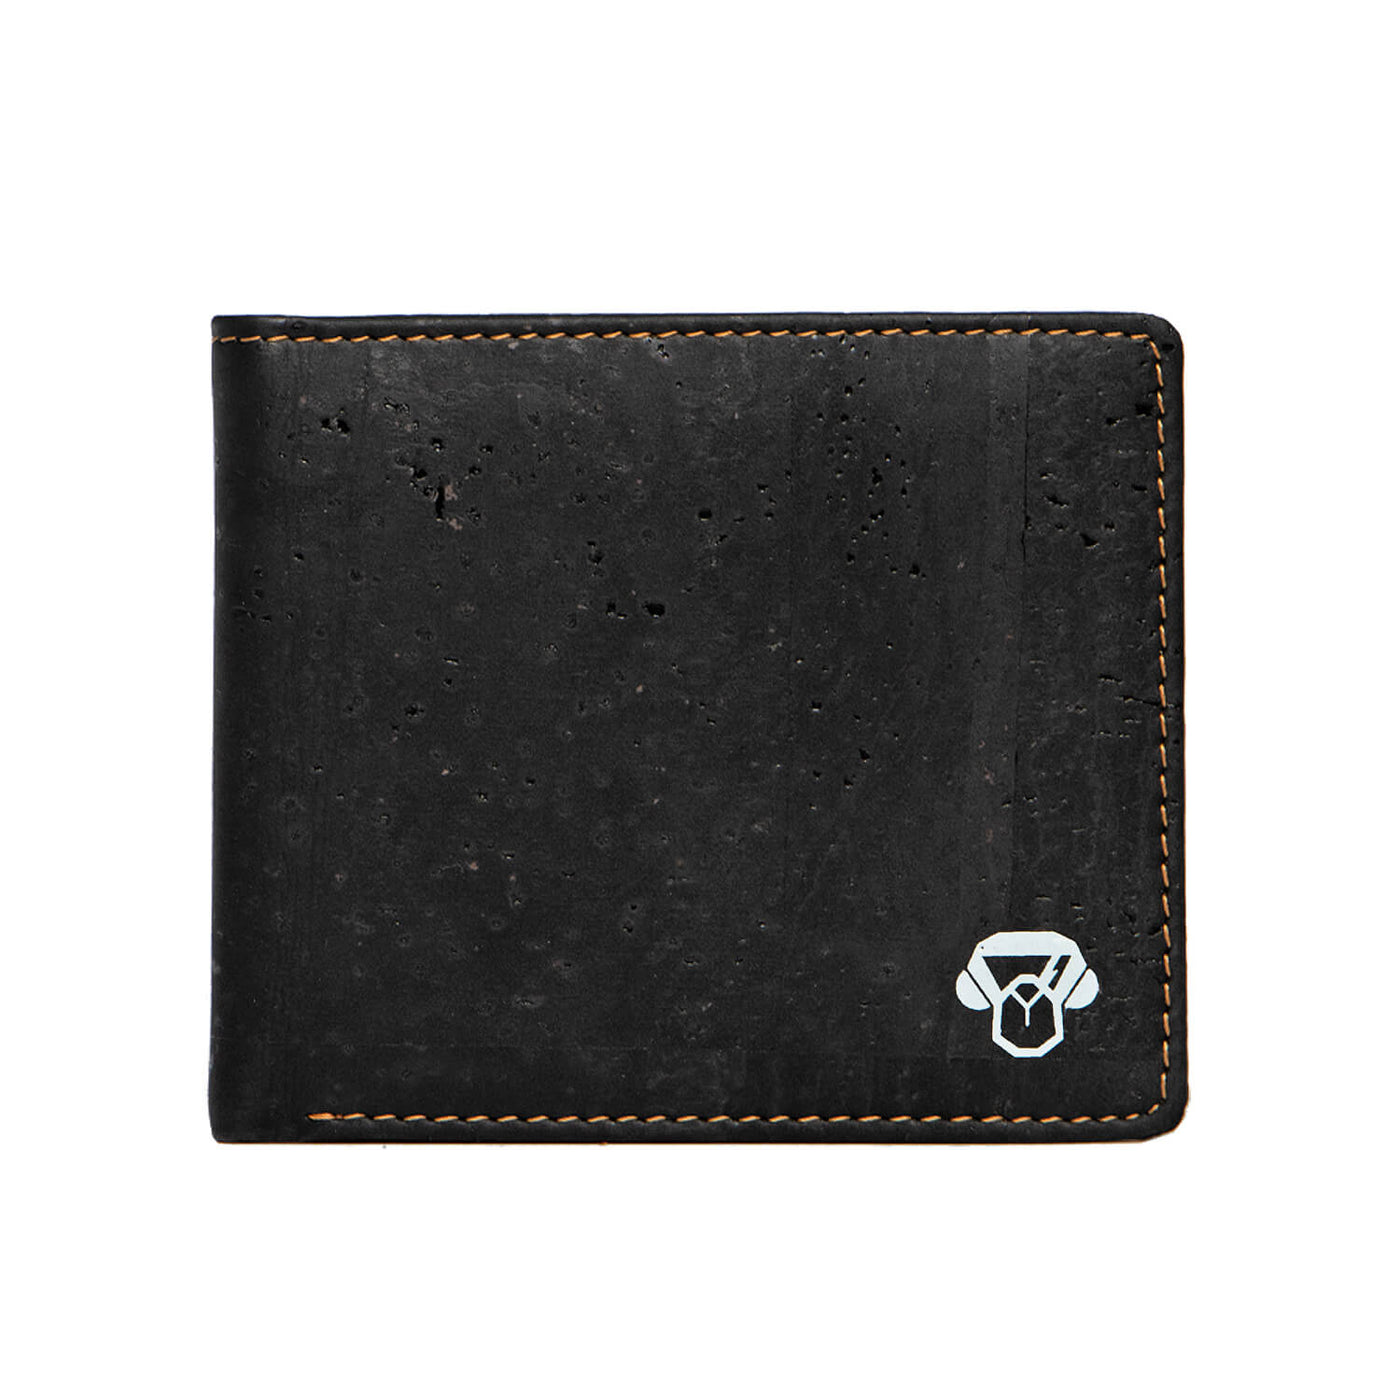 billetera de corcho bonoboss de color negro para hombre idea de regalo billetera ecologica y sustentable